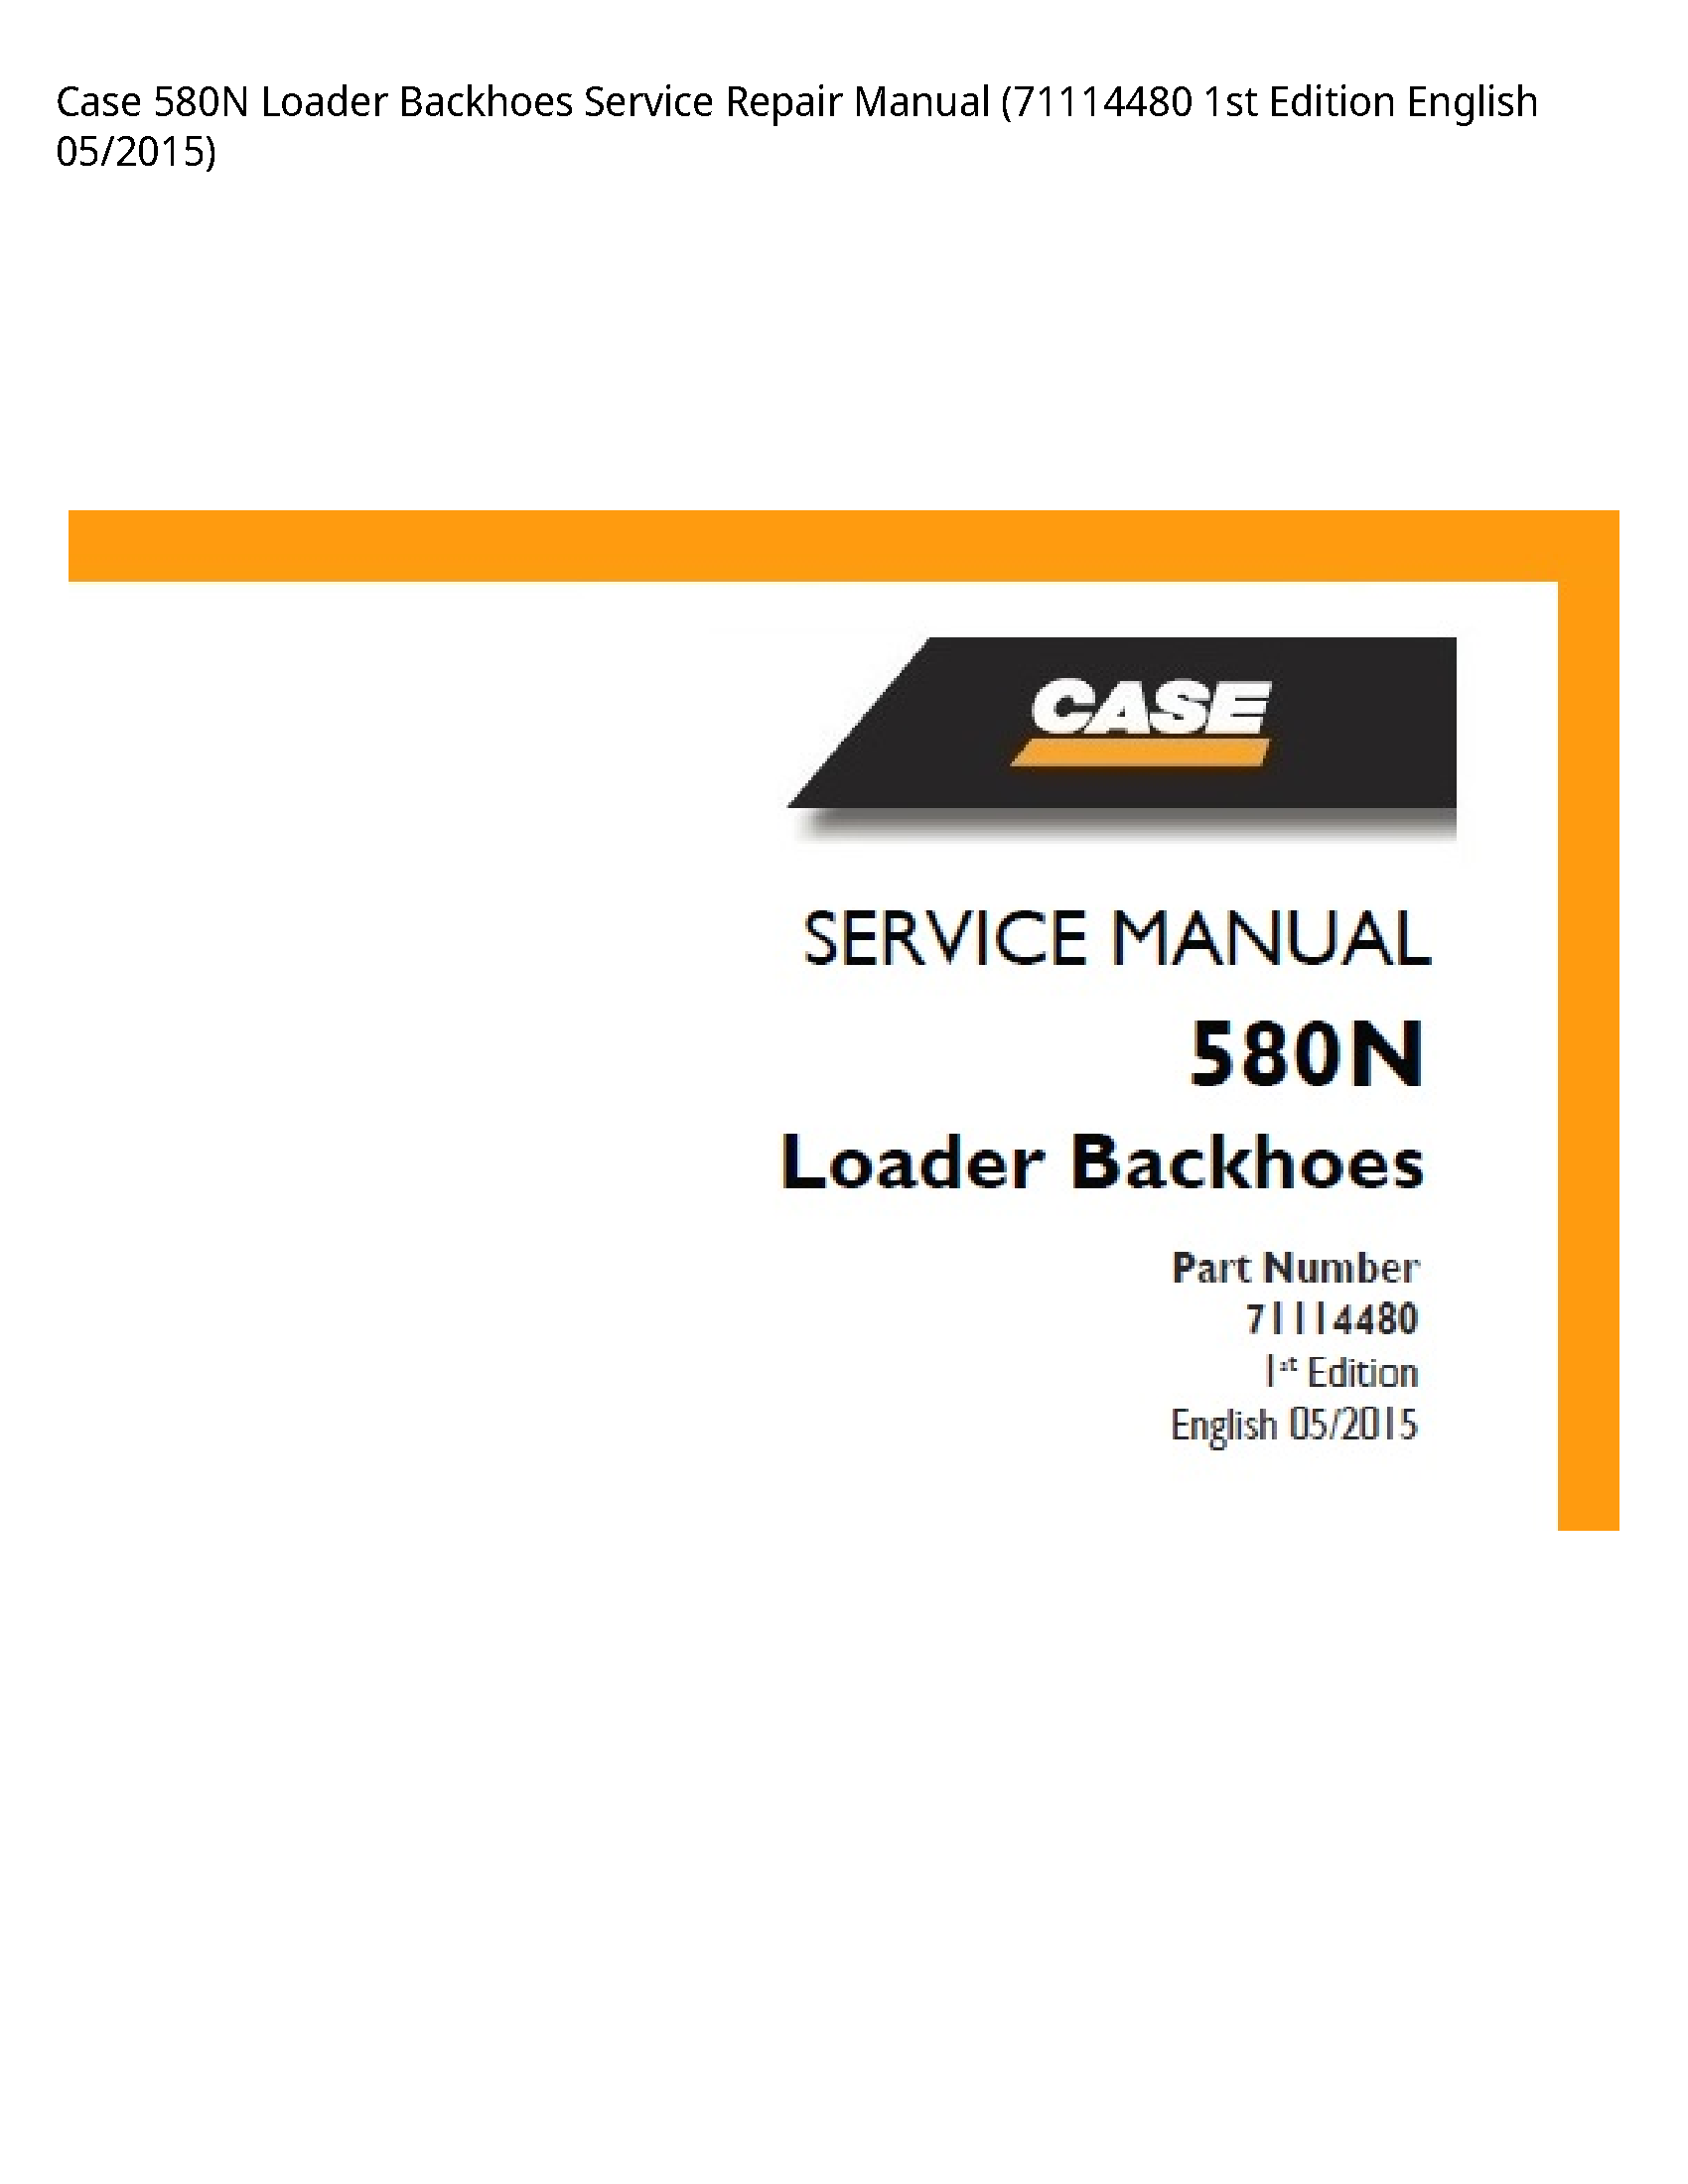 Case/Case IH 580N Loader Backhoes manual